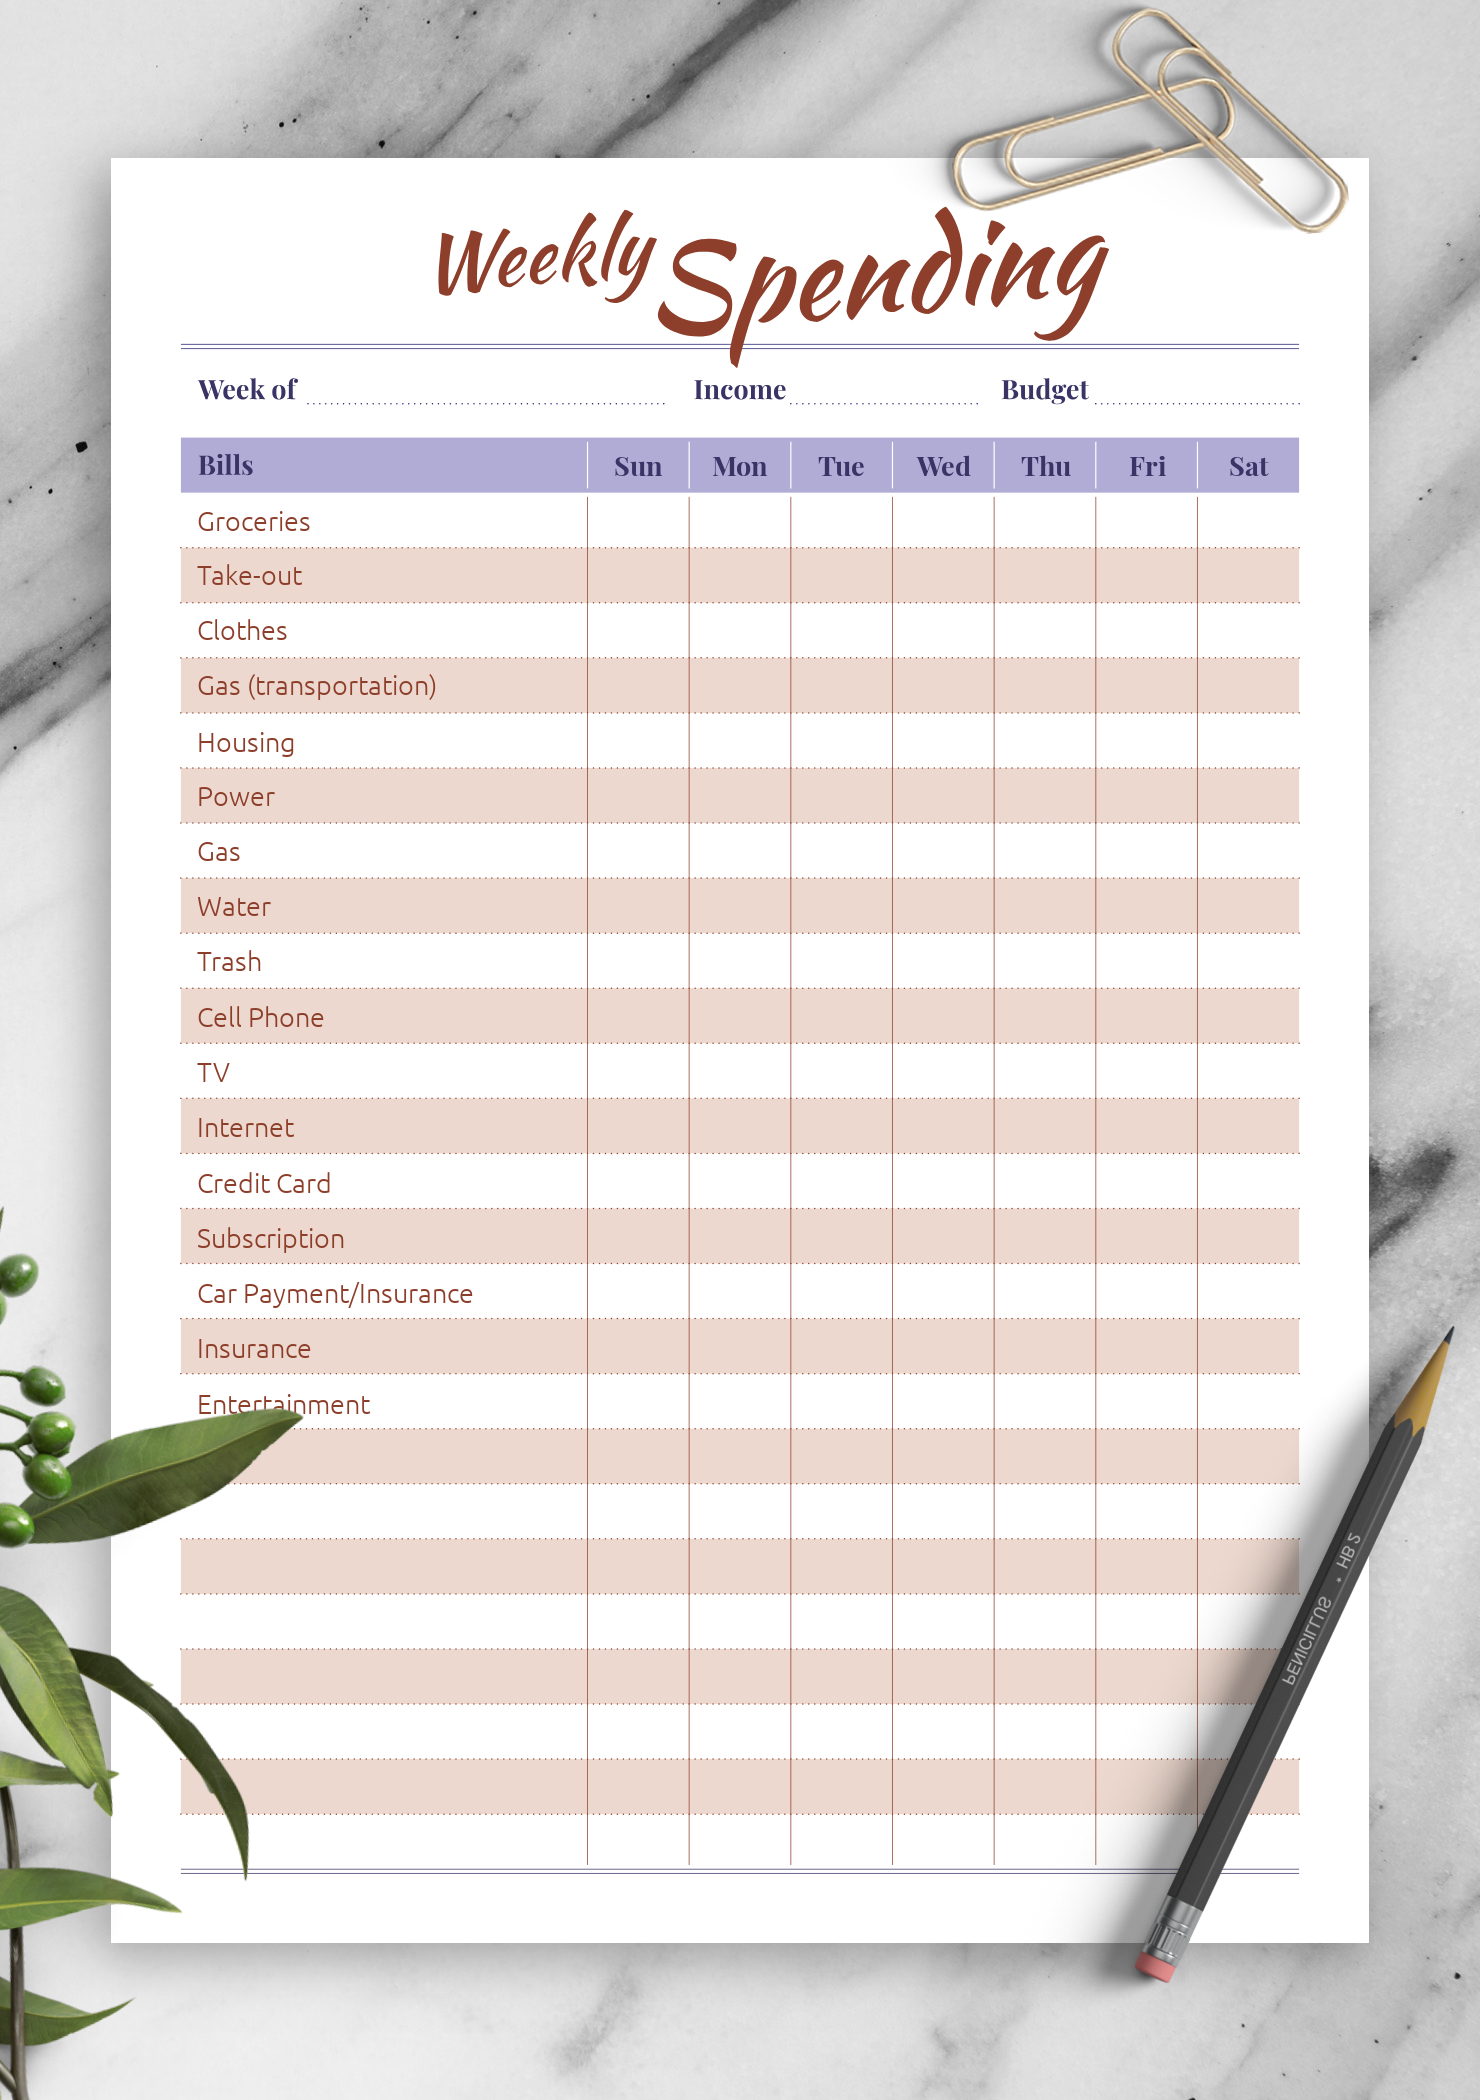 Free Printable Weekly Budget Planner Worksheet | Free inside Monthly Budget Planner Template Free Download